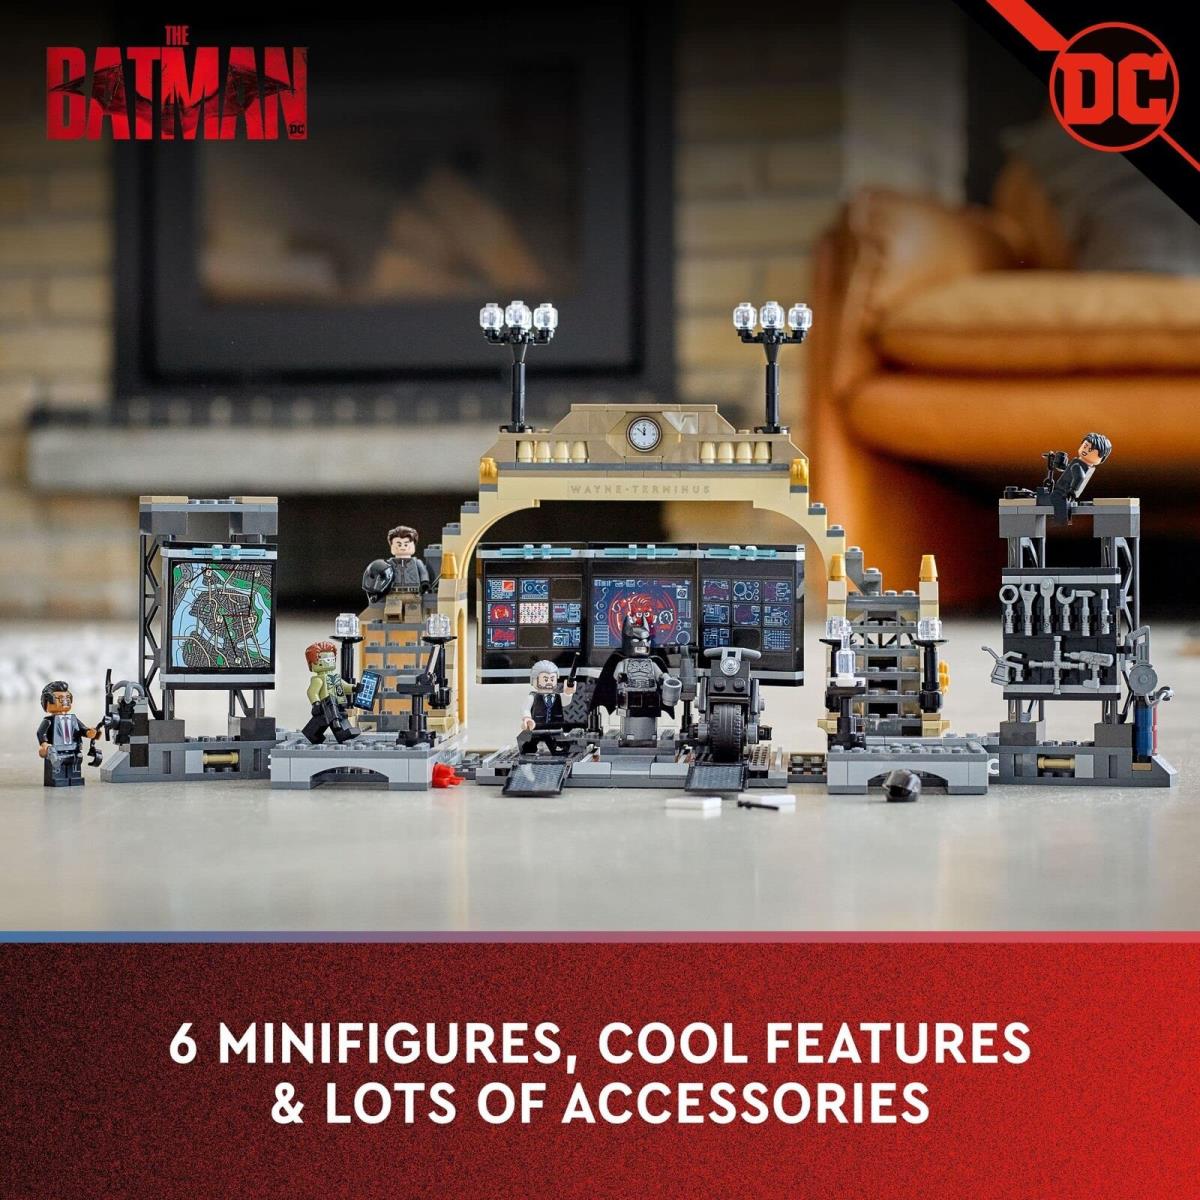 Lego DC The Batman Batcave: The Riddler Face-off 76183 - 581 Pieces